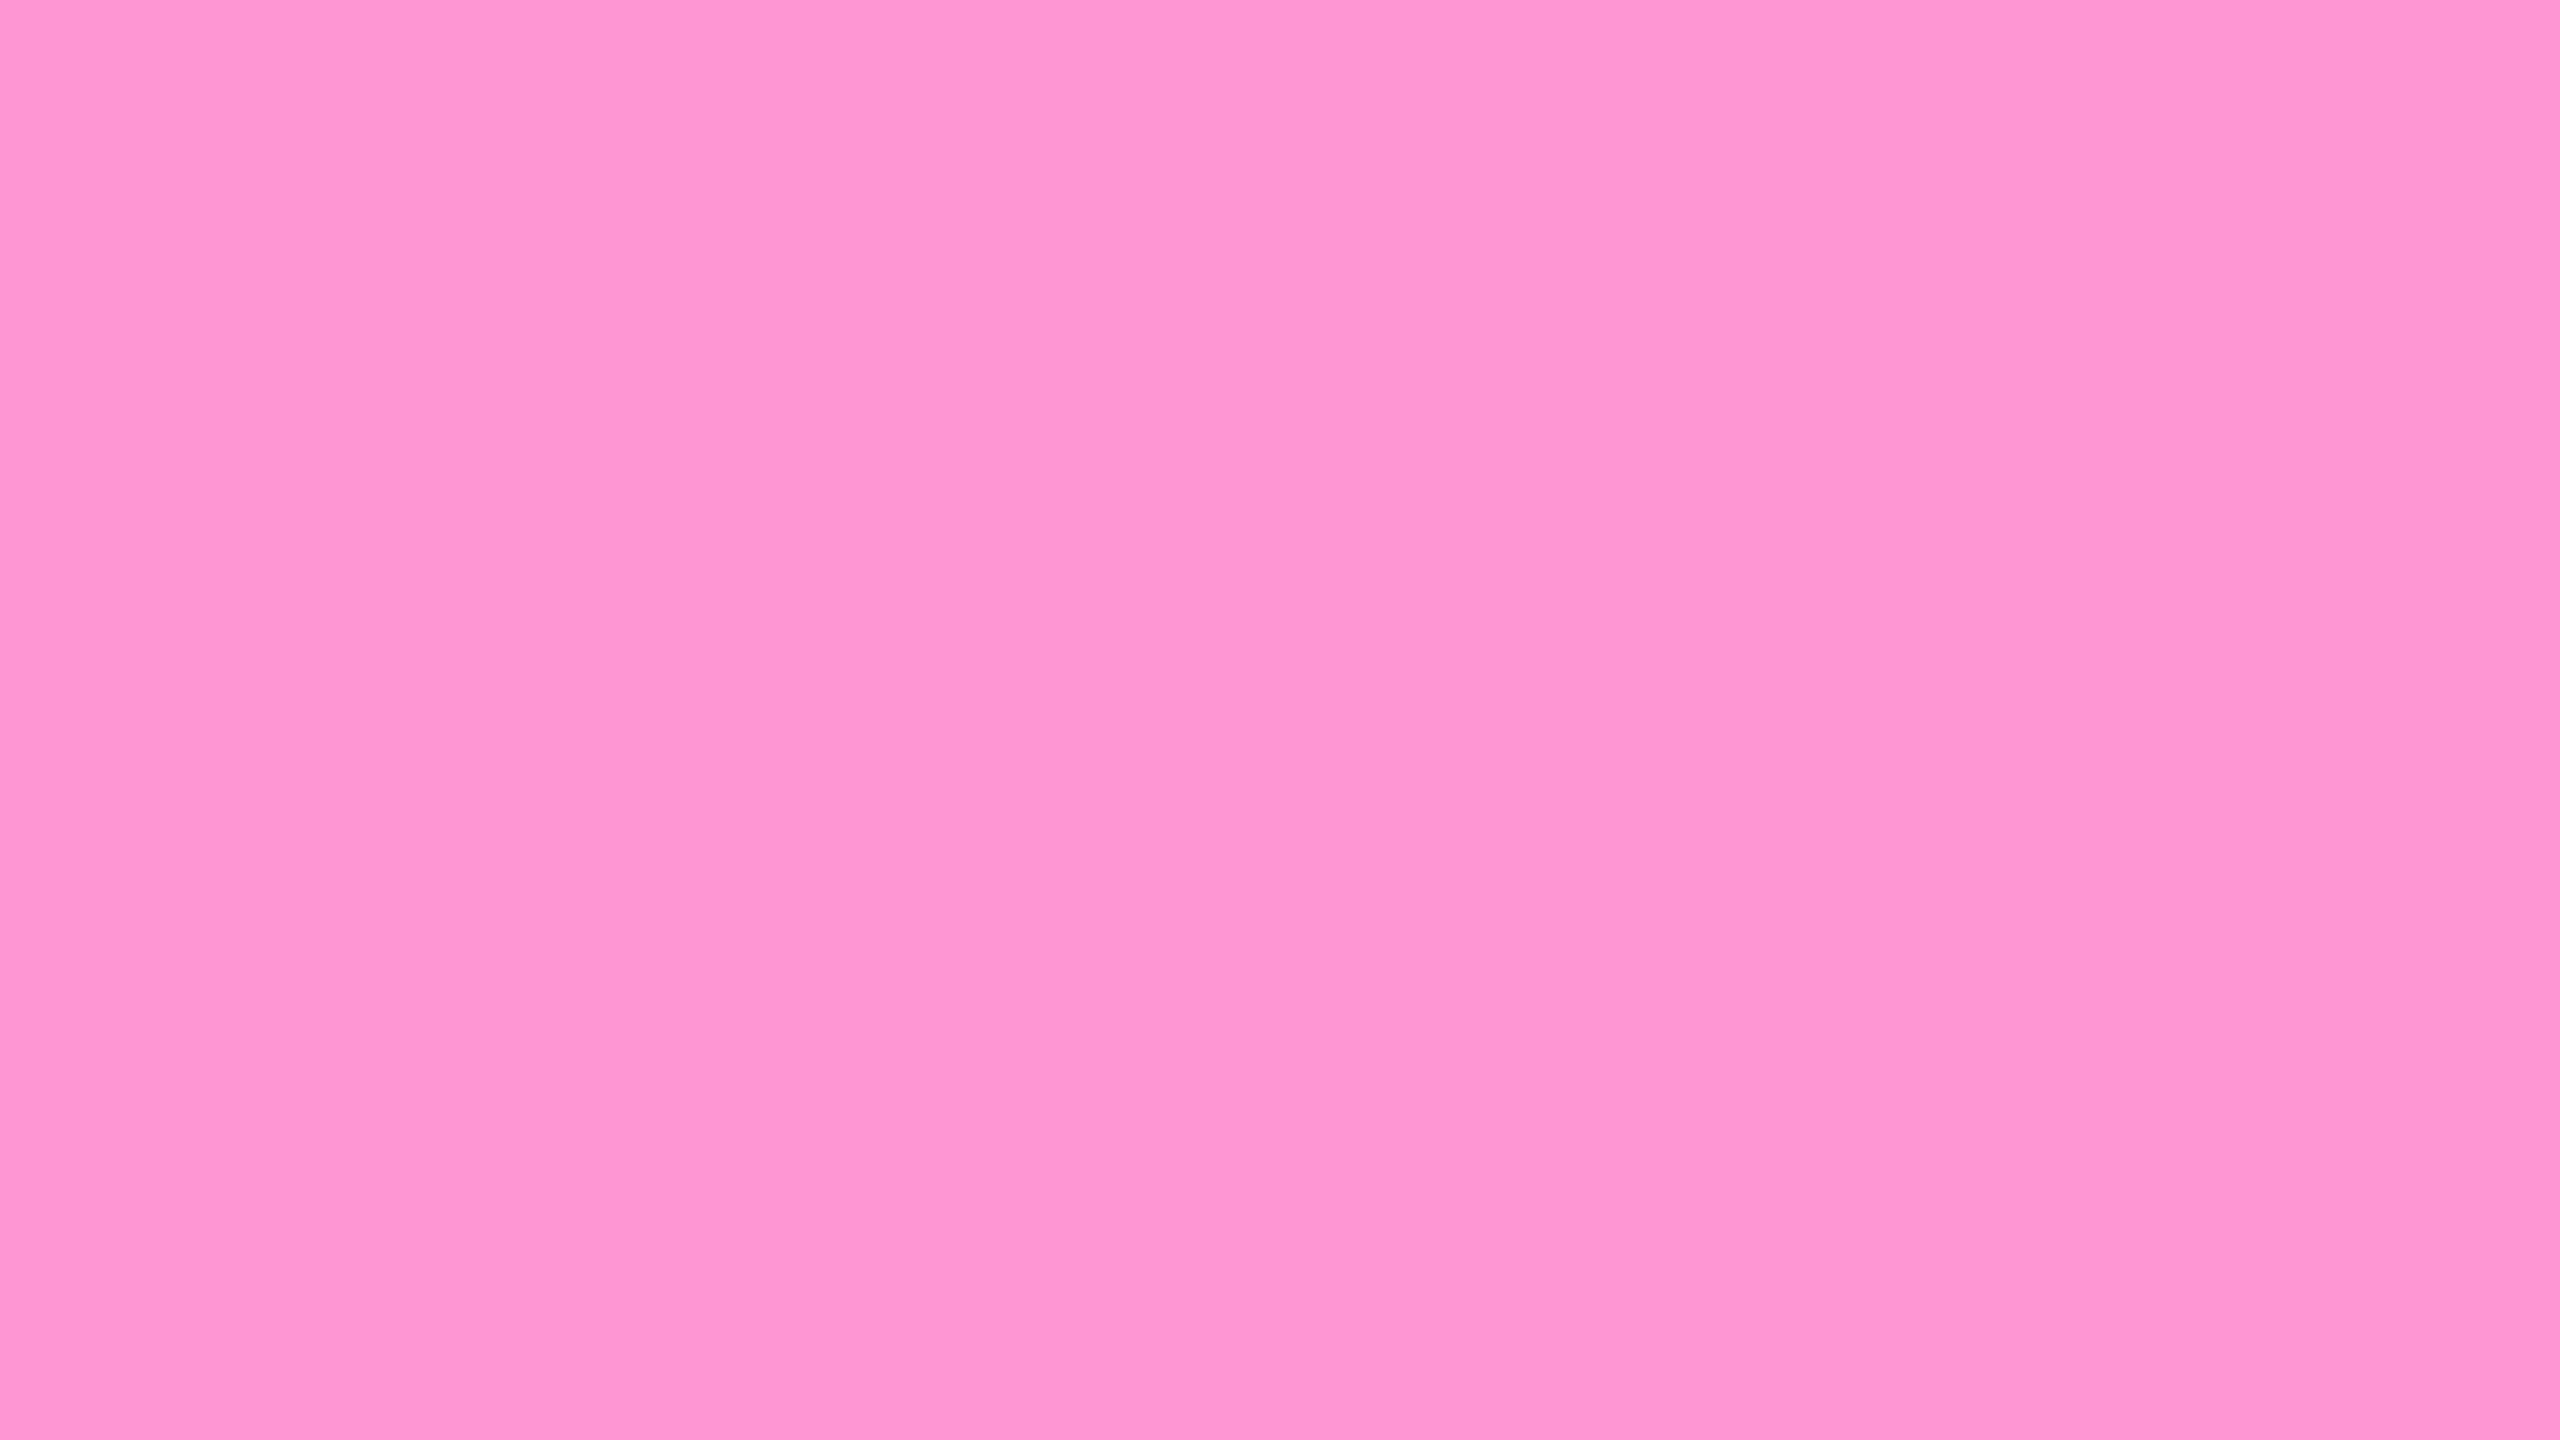 2560x1440 1920x1200 Light Pink - Wallpaper, High Definition, High Quality, Widescreen